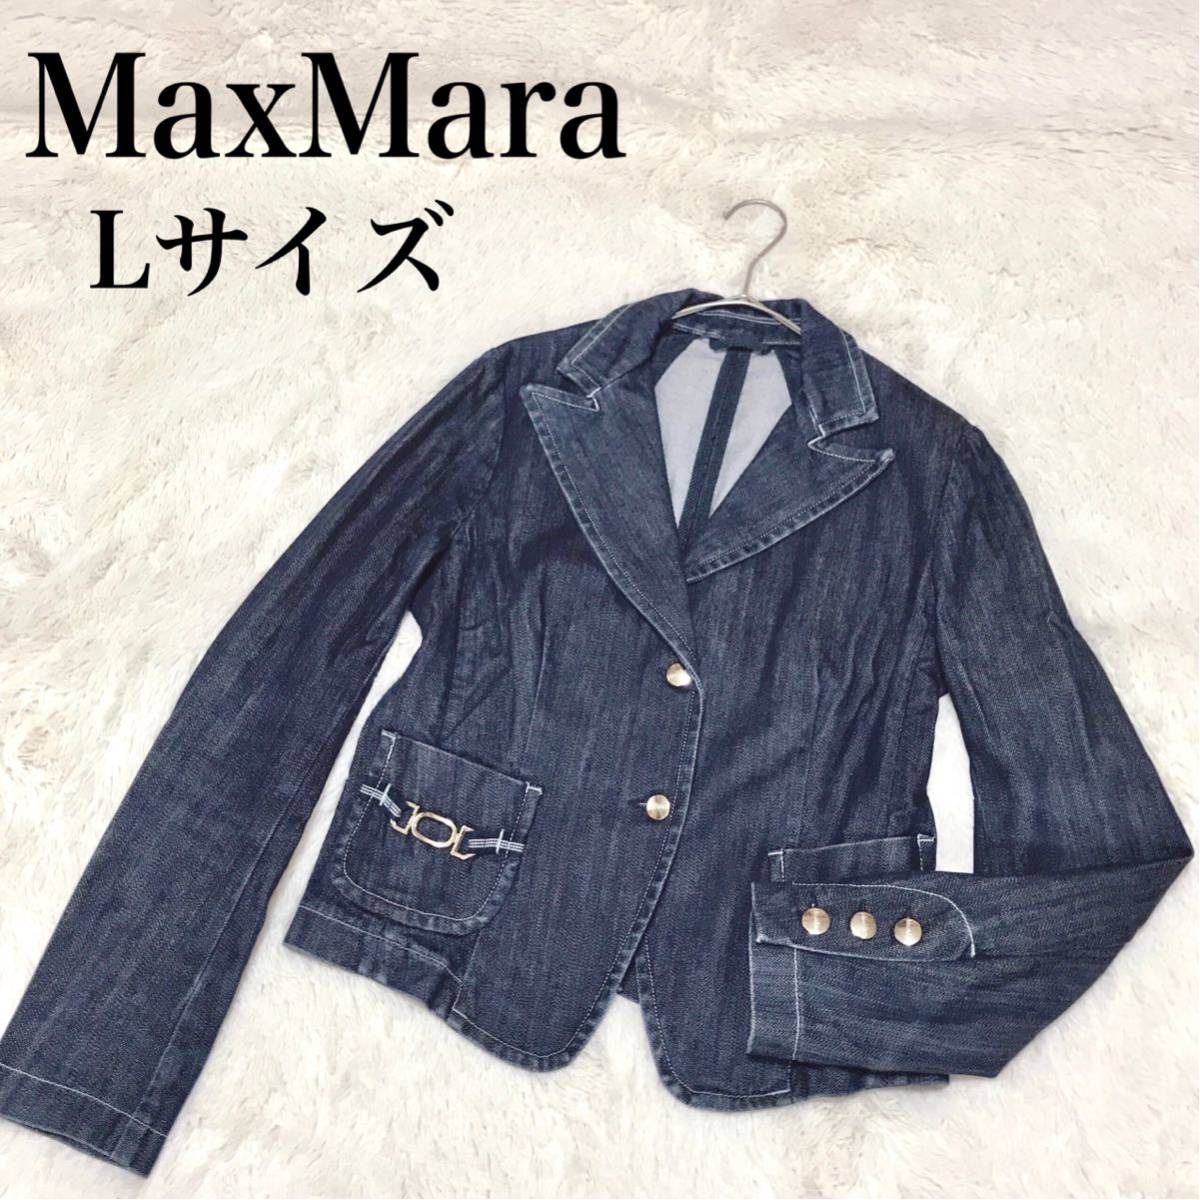 美品Lサイズ MaxMara デニムジャケット 銀タグ テーラードジャケット マックスマーラ Gジャン Yahoo!フリマ（旧）のサムネイル